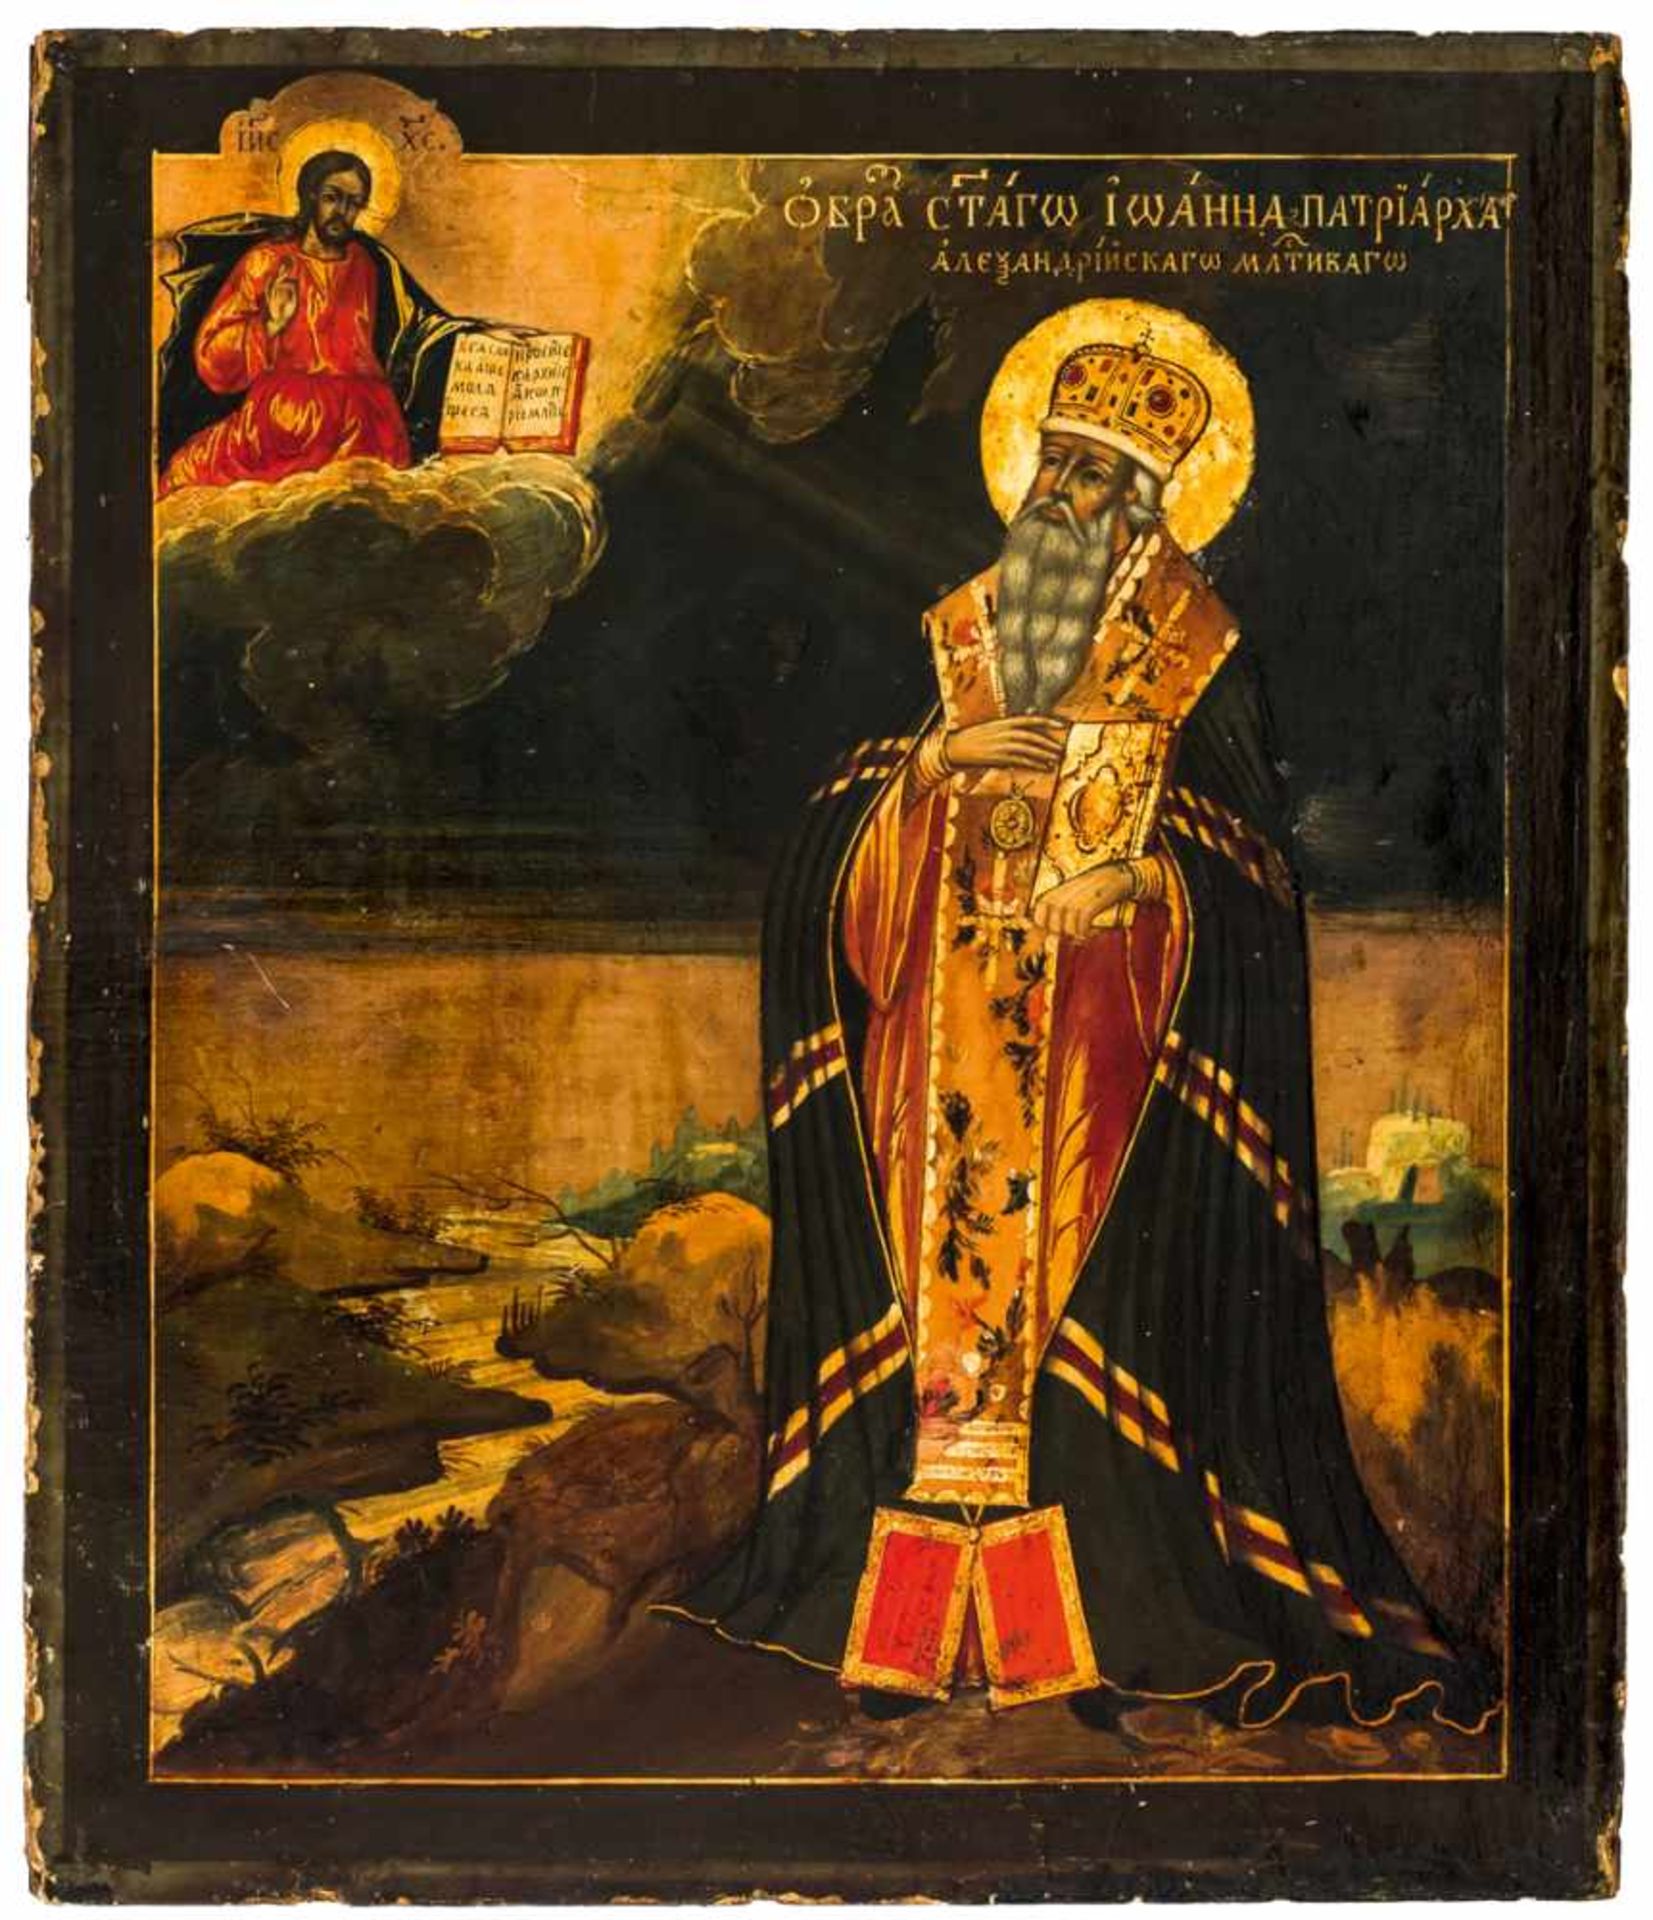 Hl. Patriach Johannes der Almosengeber Russische Ikone mit vergoldetem Silberoklad (394g), 2. Hälfte - Bild 2 aus 3